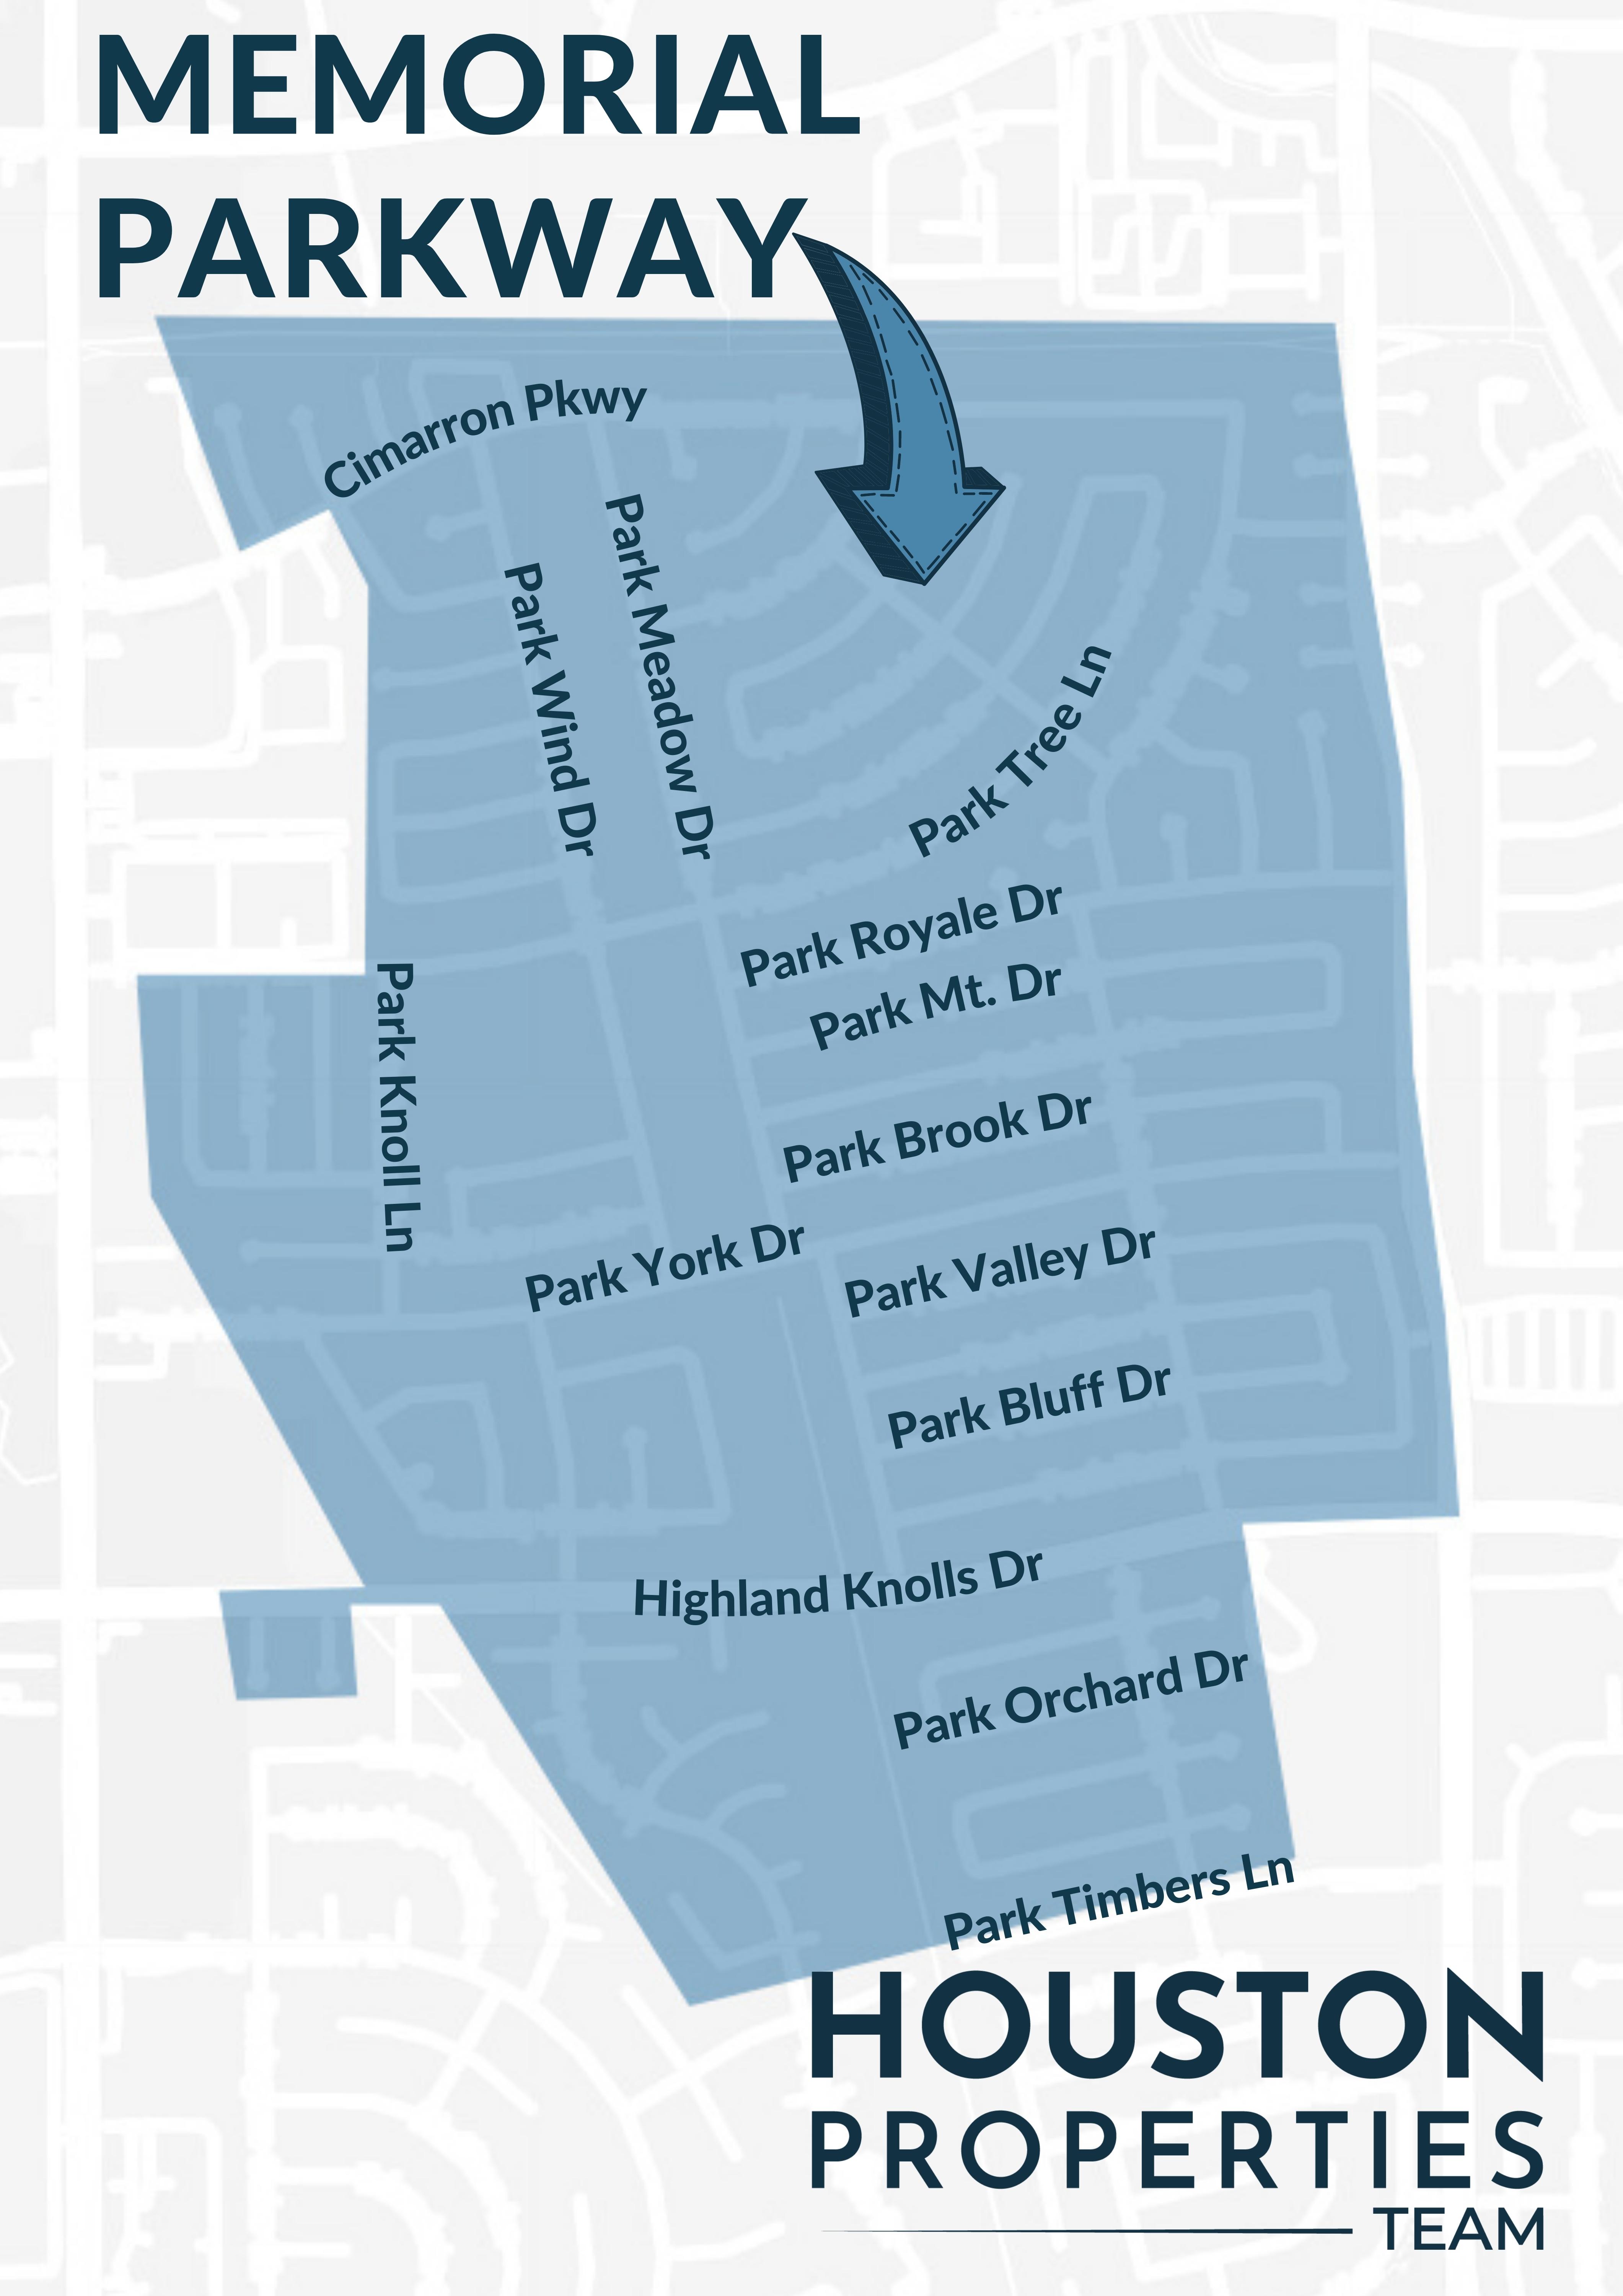 Map of Memorial Parkway